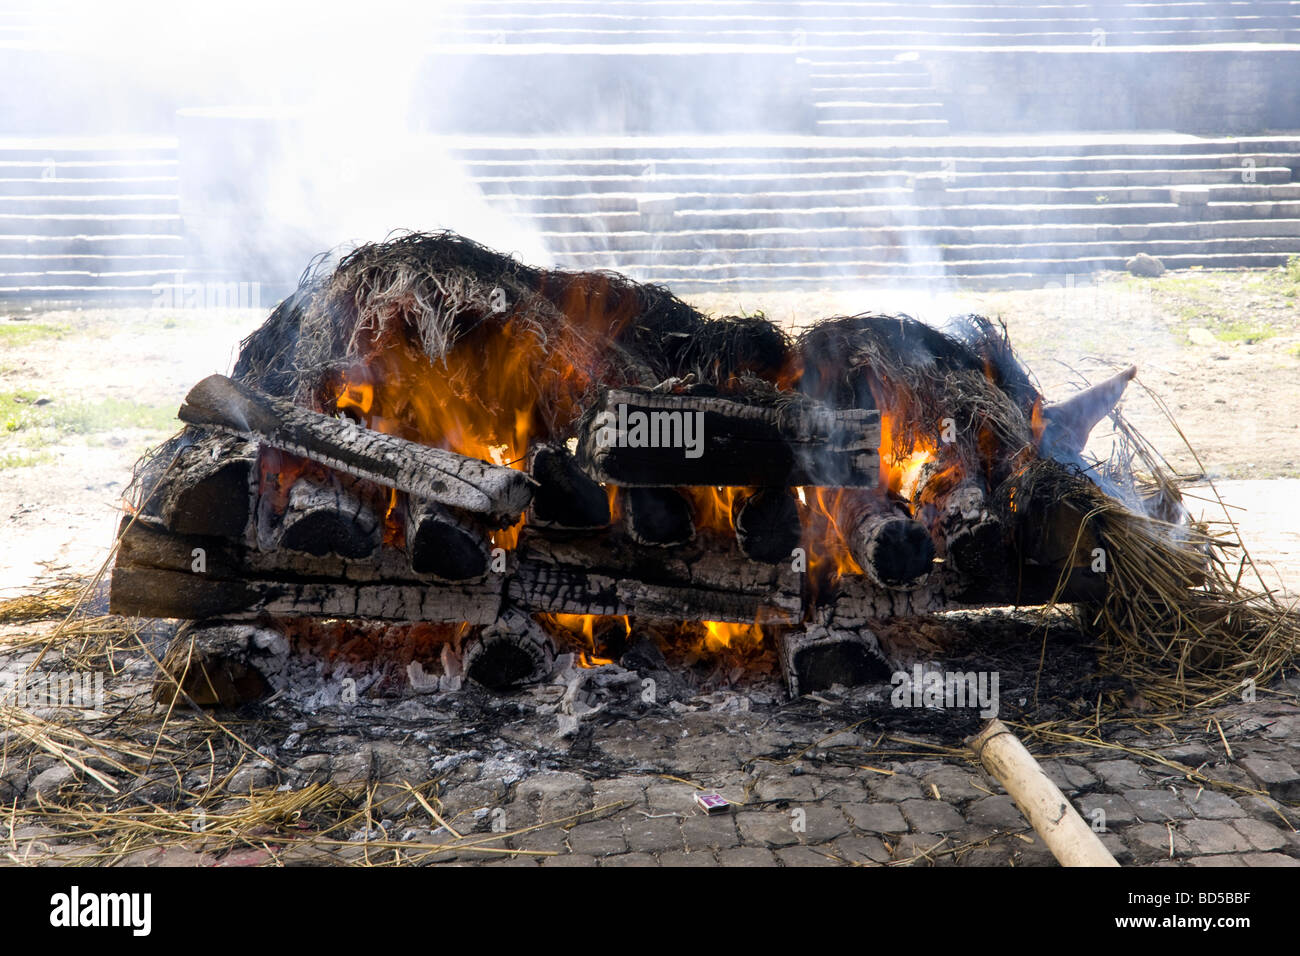 Pira funeraria hindú para la cremación en curso por el río bagmati Foto de stock